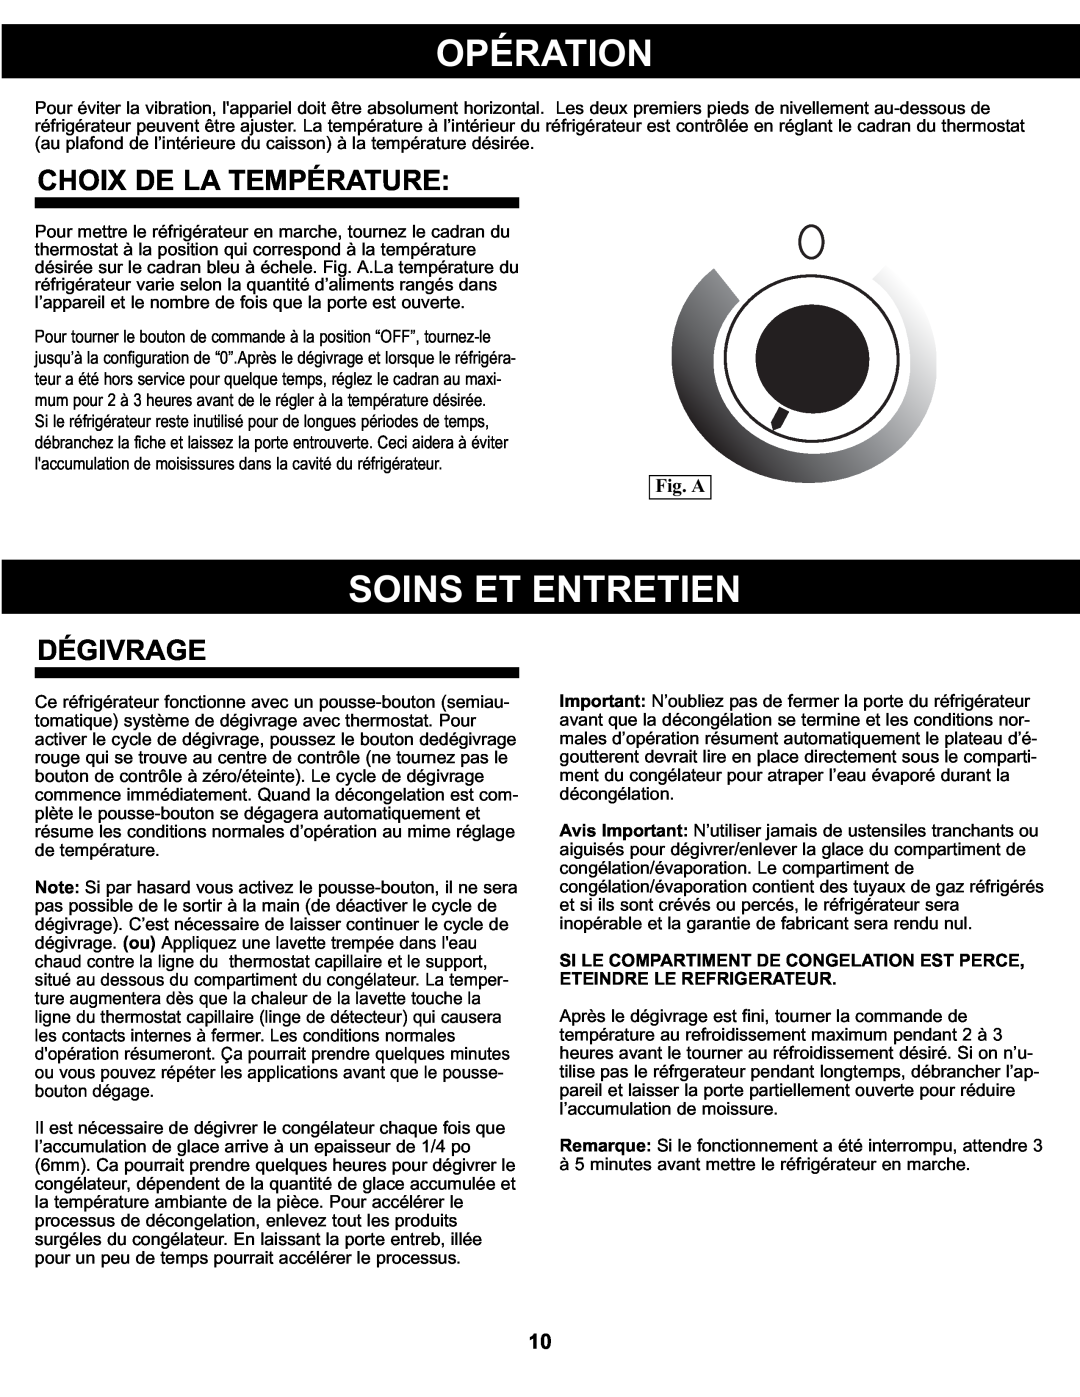 Sunbeam SBCR91BSL manual Opération, Soins Et Entretien, Choix De La Température, Dégivrage, Fig. A 